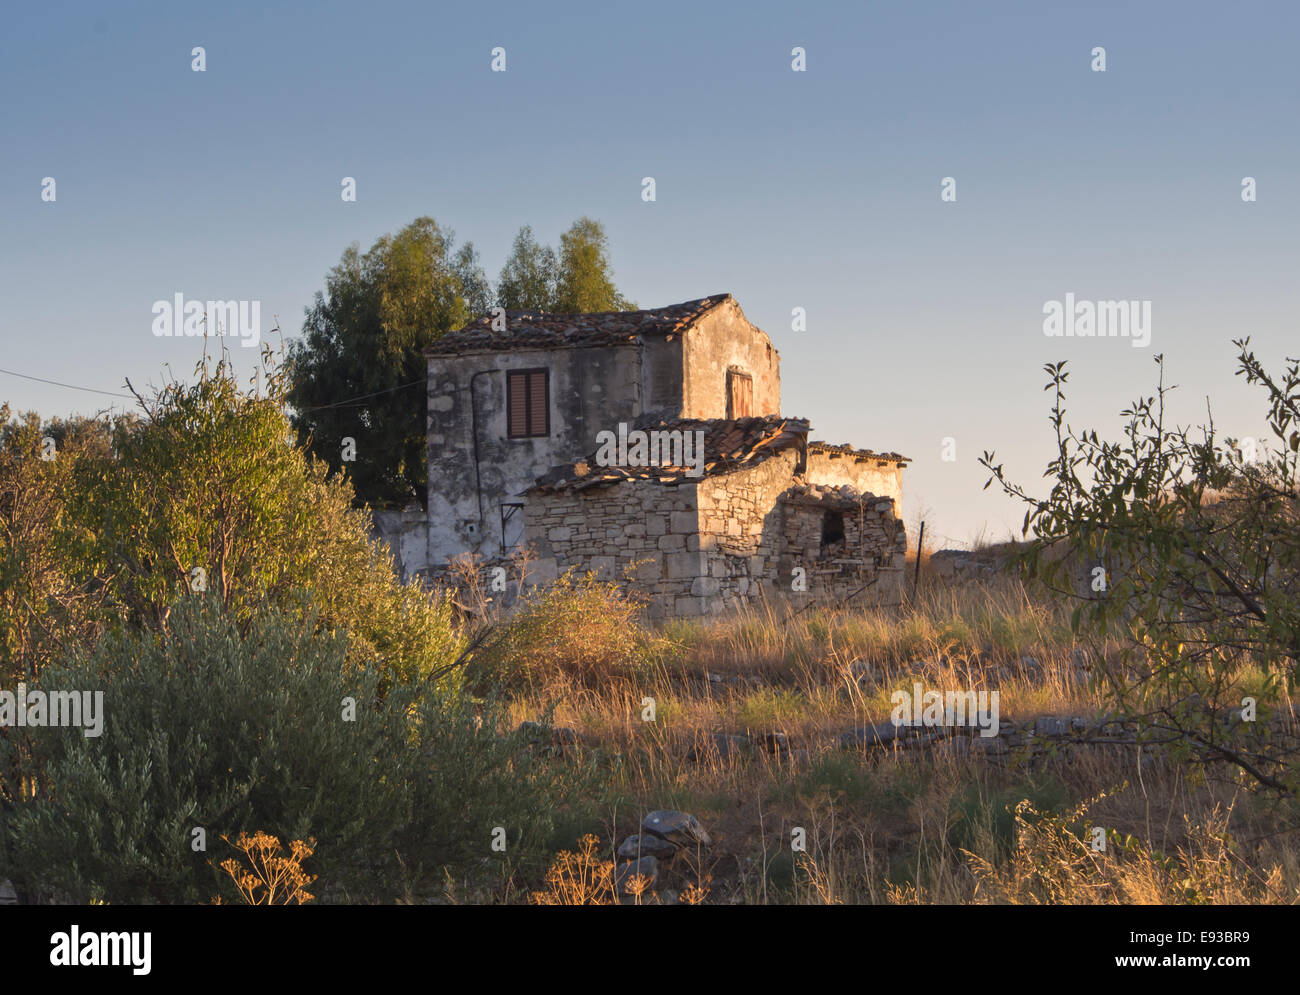 Vacío griego casa de piedra en la cima de una colina en golden luz del atardecer, Samos Grecia Foto de stock